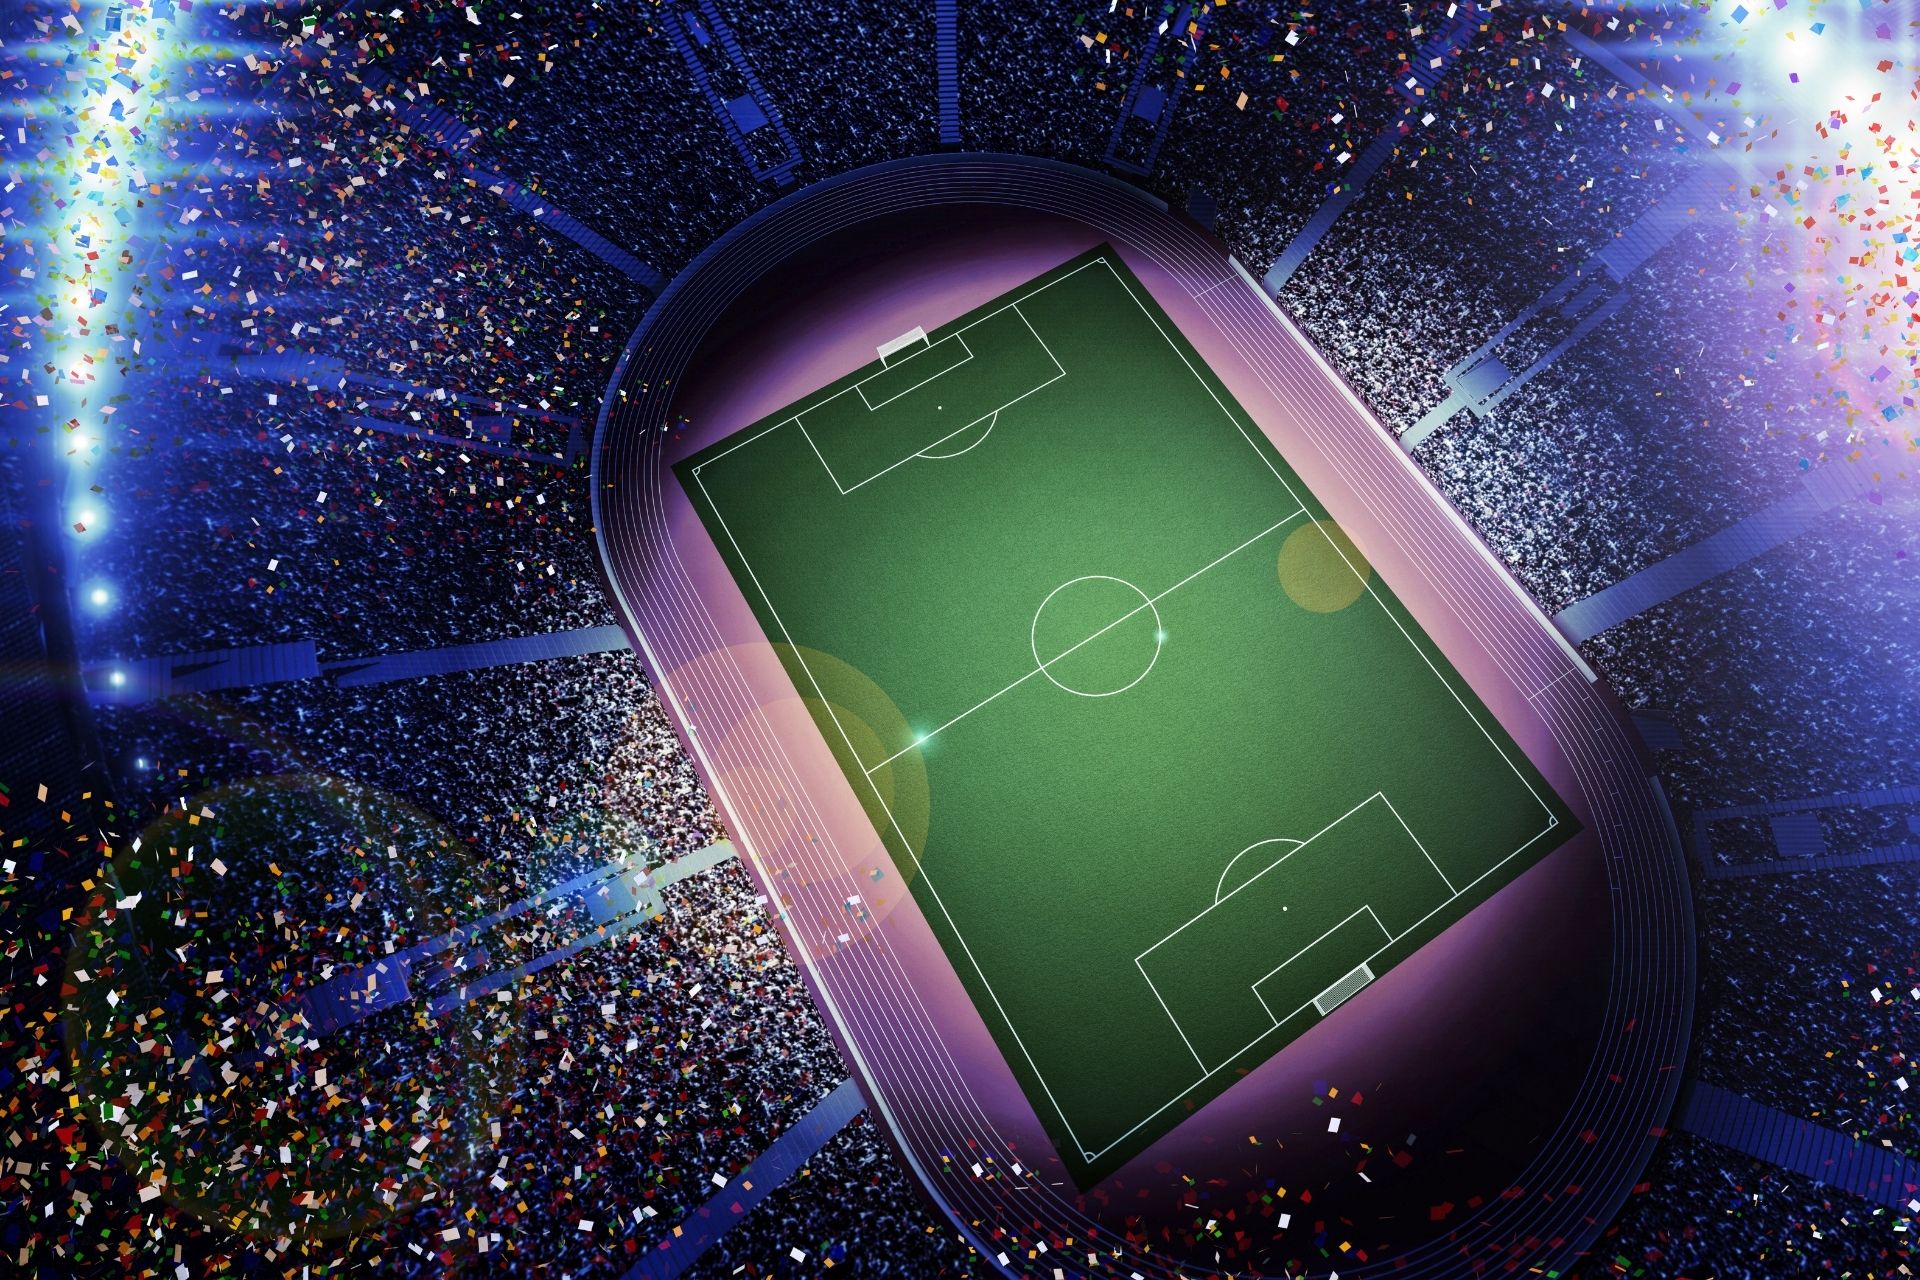 Na stadionie Parc des Princes odbyło się spotkanie Paris Saint Germain kontra Estac Troyes zakończone wynikiem 4-3